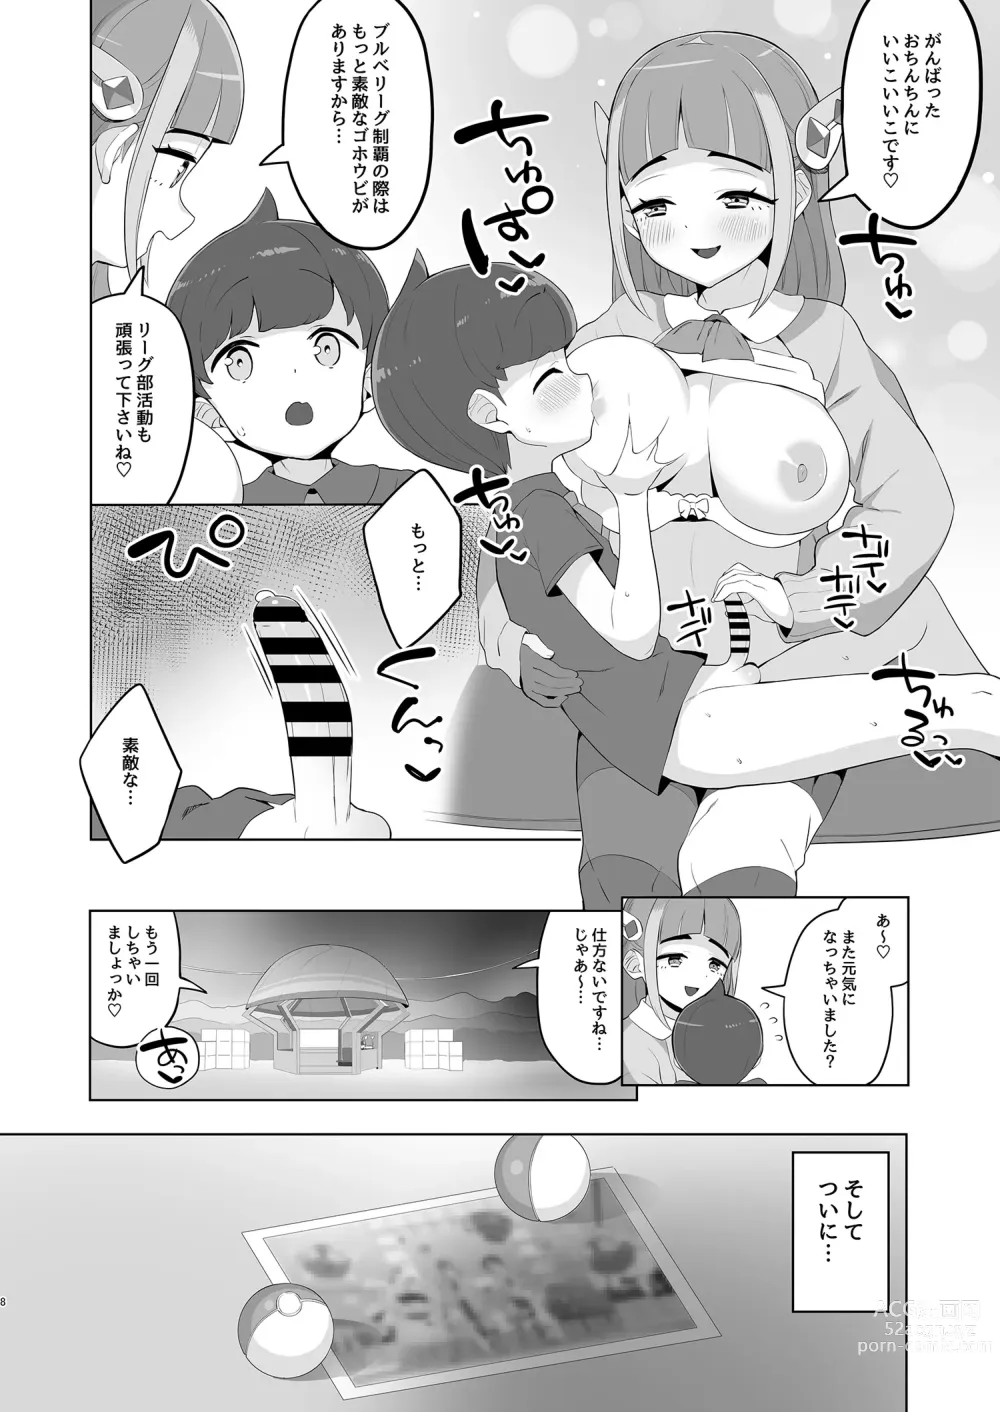 Page 8 of doujinshi Taro no kawaii ryugakusei ikusei keikaku